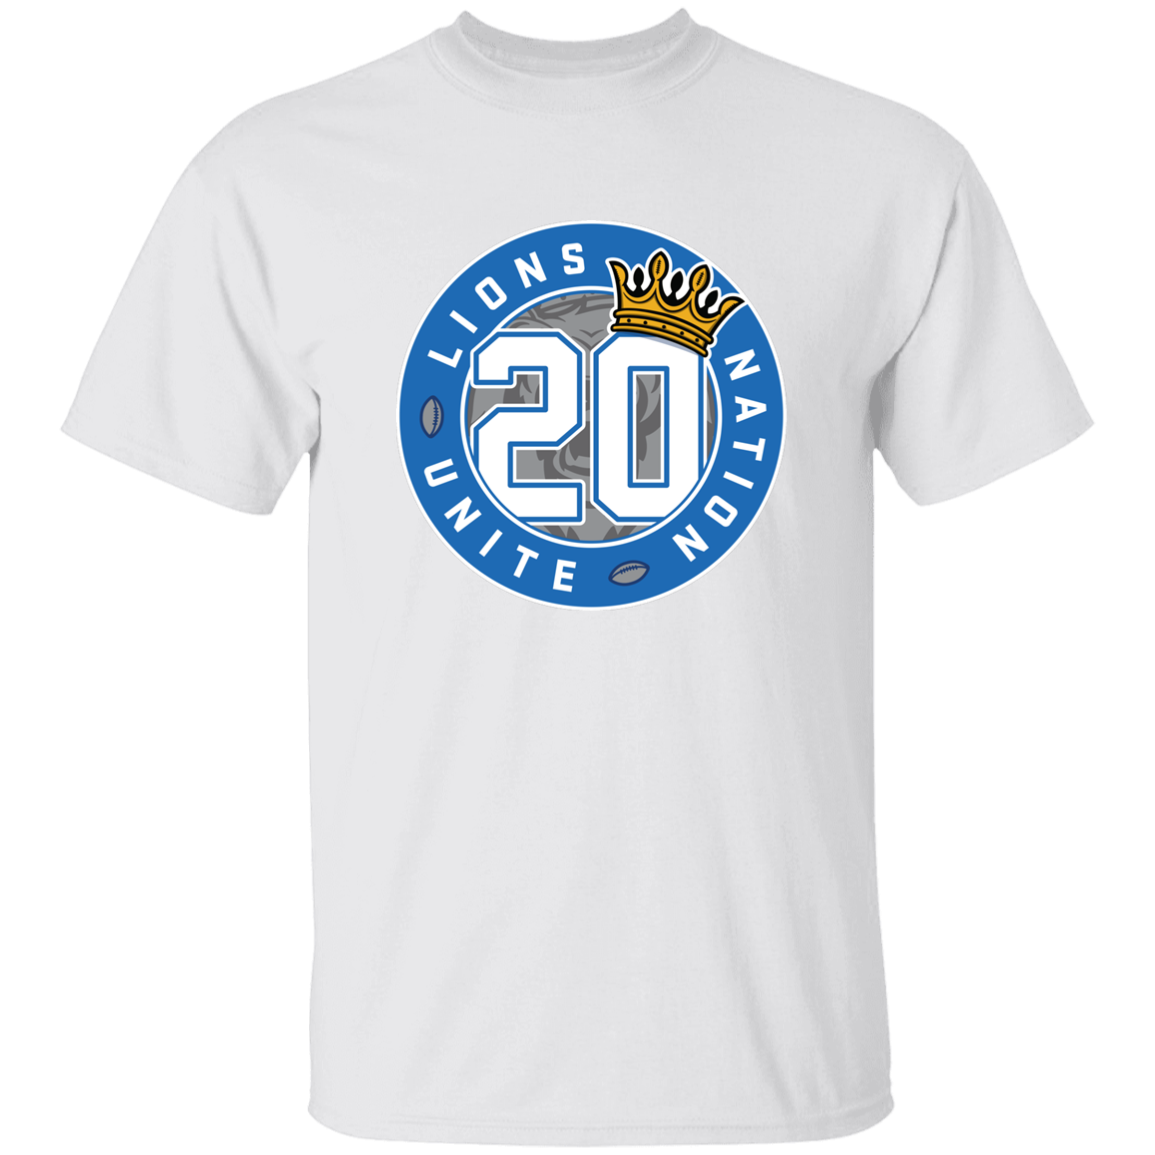 No. 20 Lions Nation Unite® Men's T-Shirt